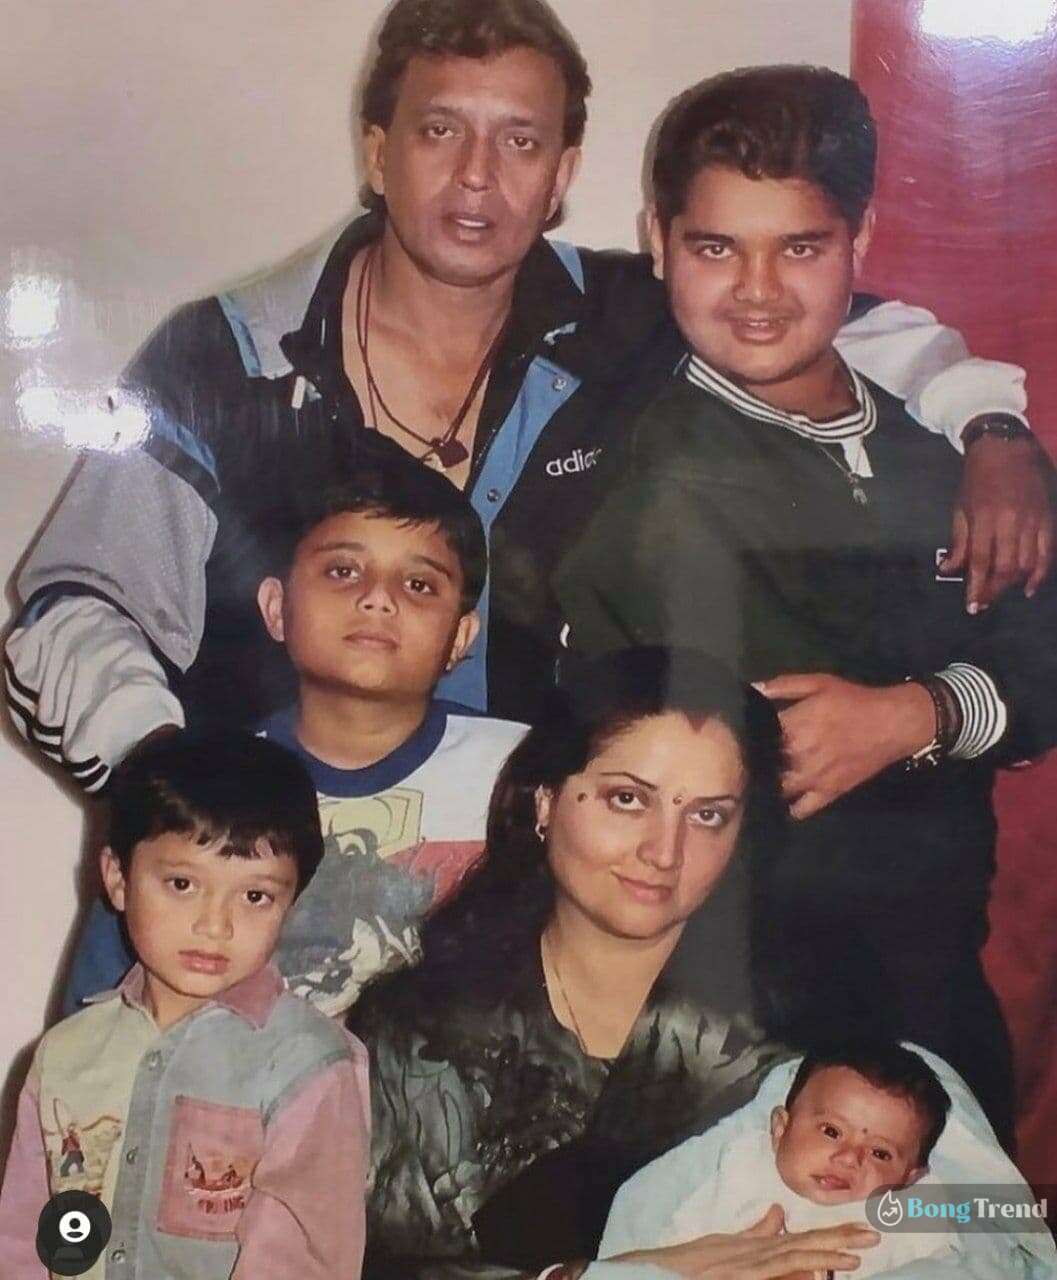 মিঠুন চক্রবর্তী,দিশানী চক্রবর্তী,দত্তক কন্যা,Mithun Chakraborty,dishani Chakraborty,adopted child,father